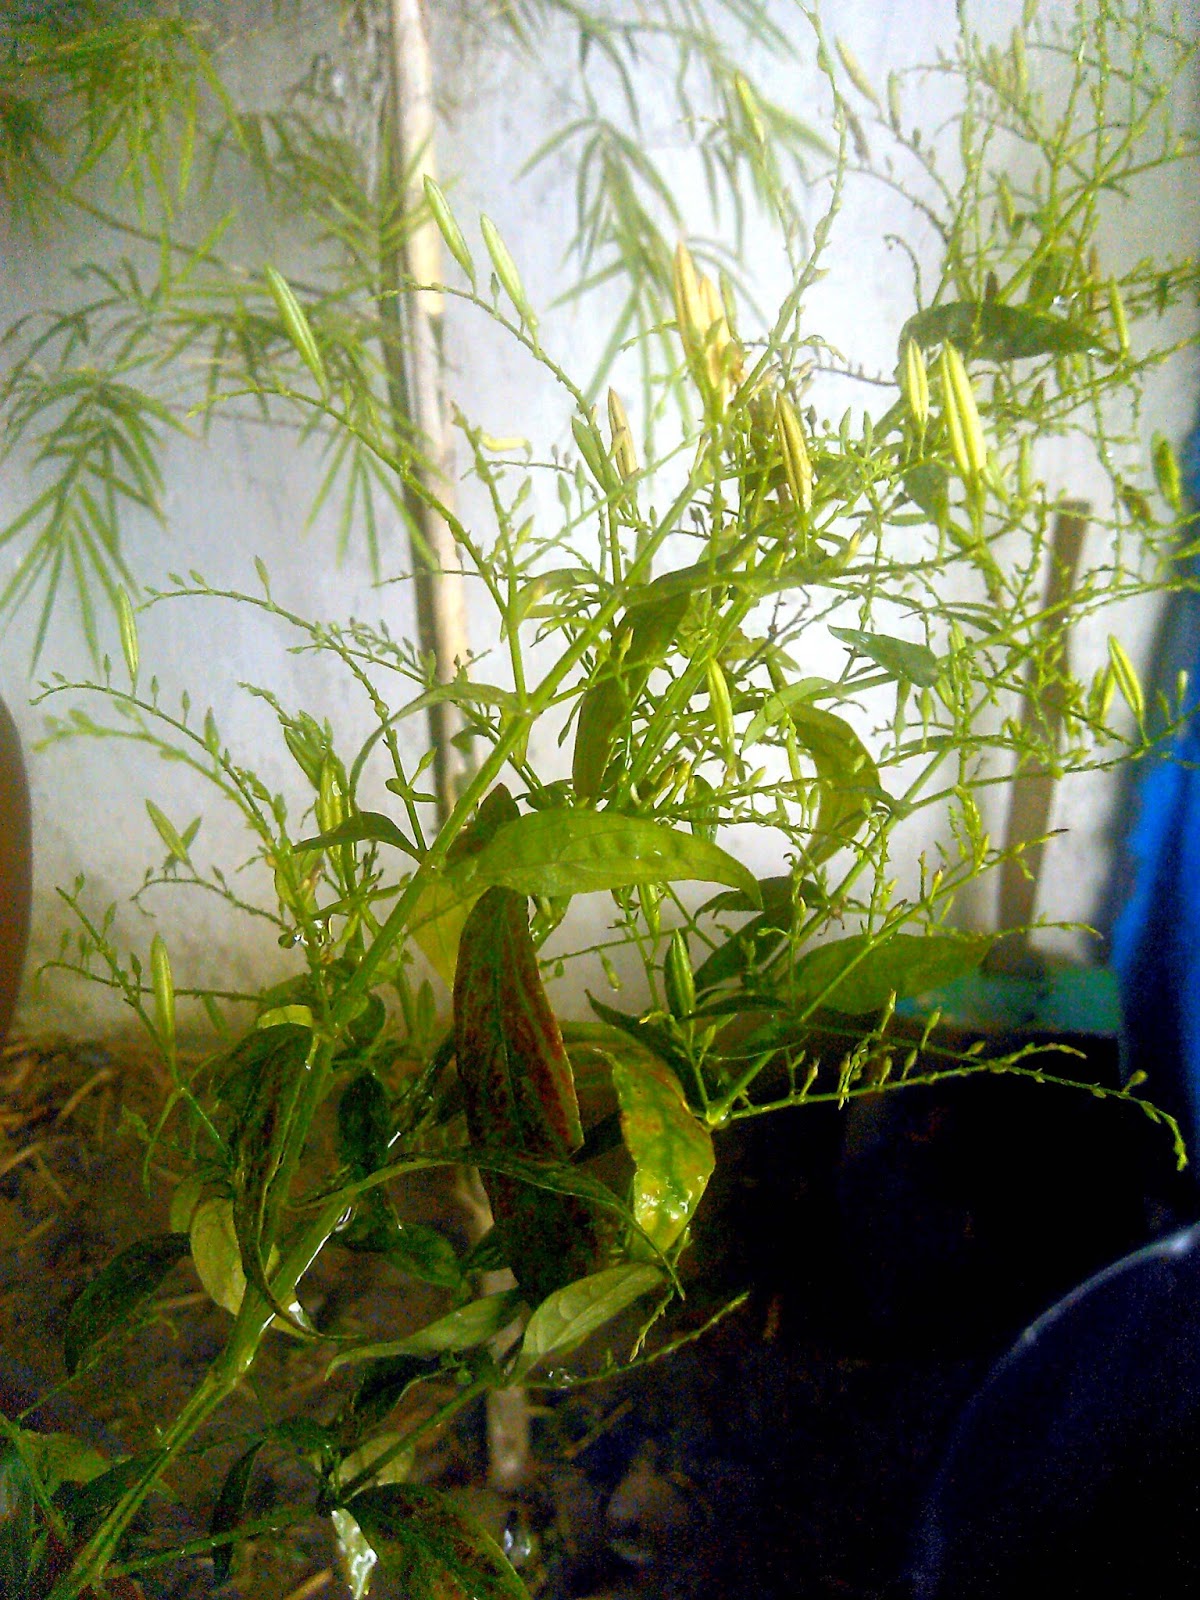 MyCafespot Serpentina plant (Andrographis paniculata